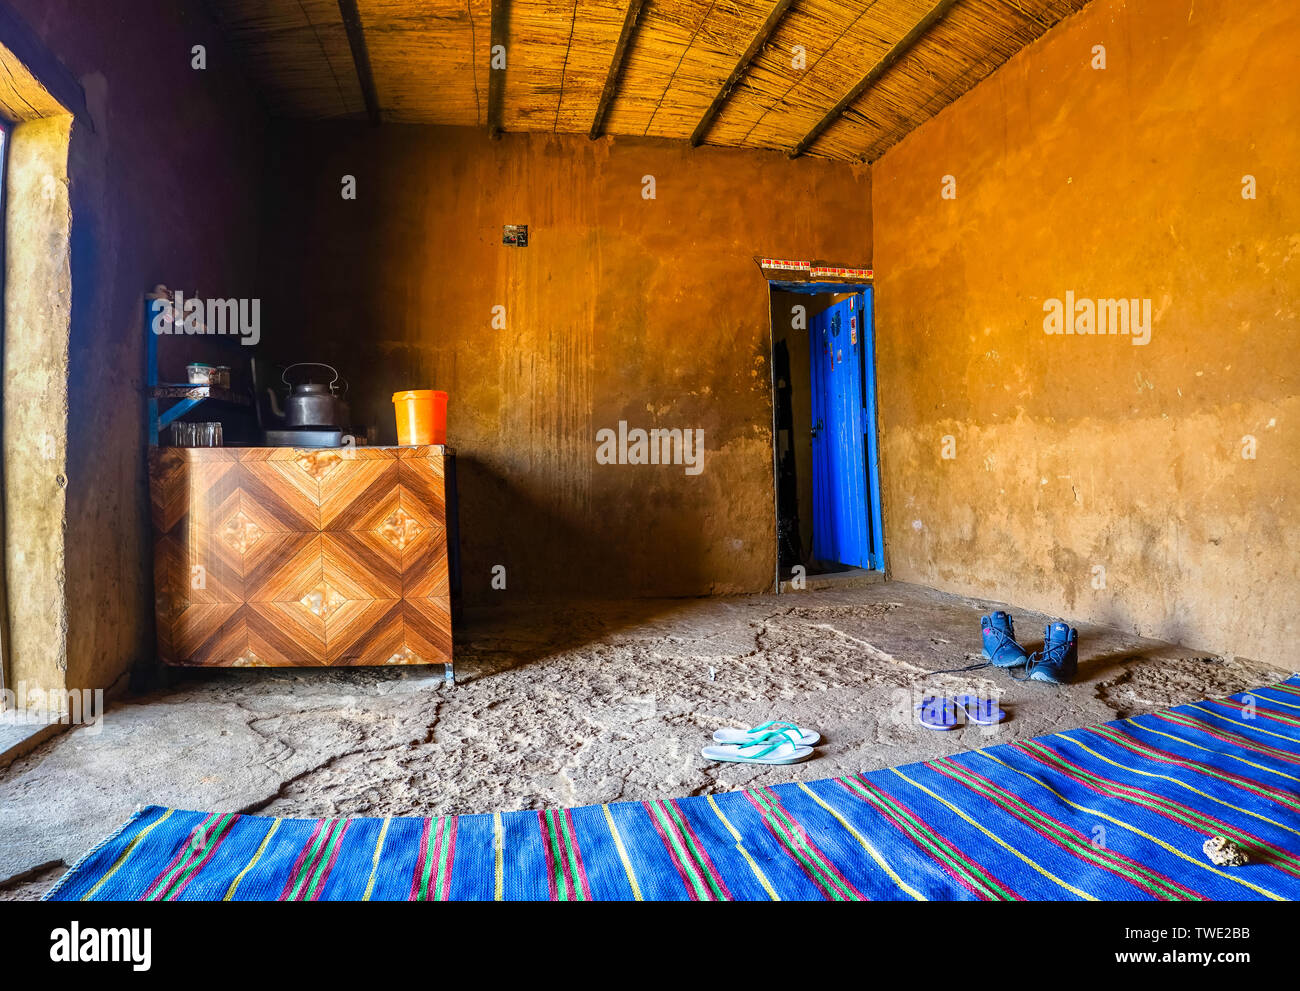 All'interno di una sosta nel deserto del Sudan con un tappeto blu e una stufa dove il cibo, il tè e il caffè sono preparati. Foto Stock